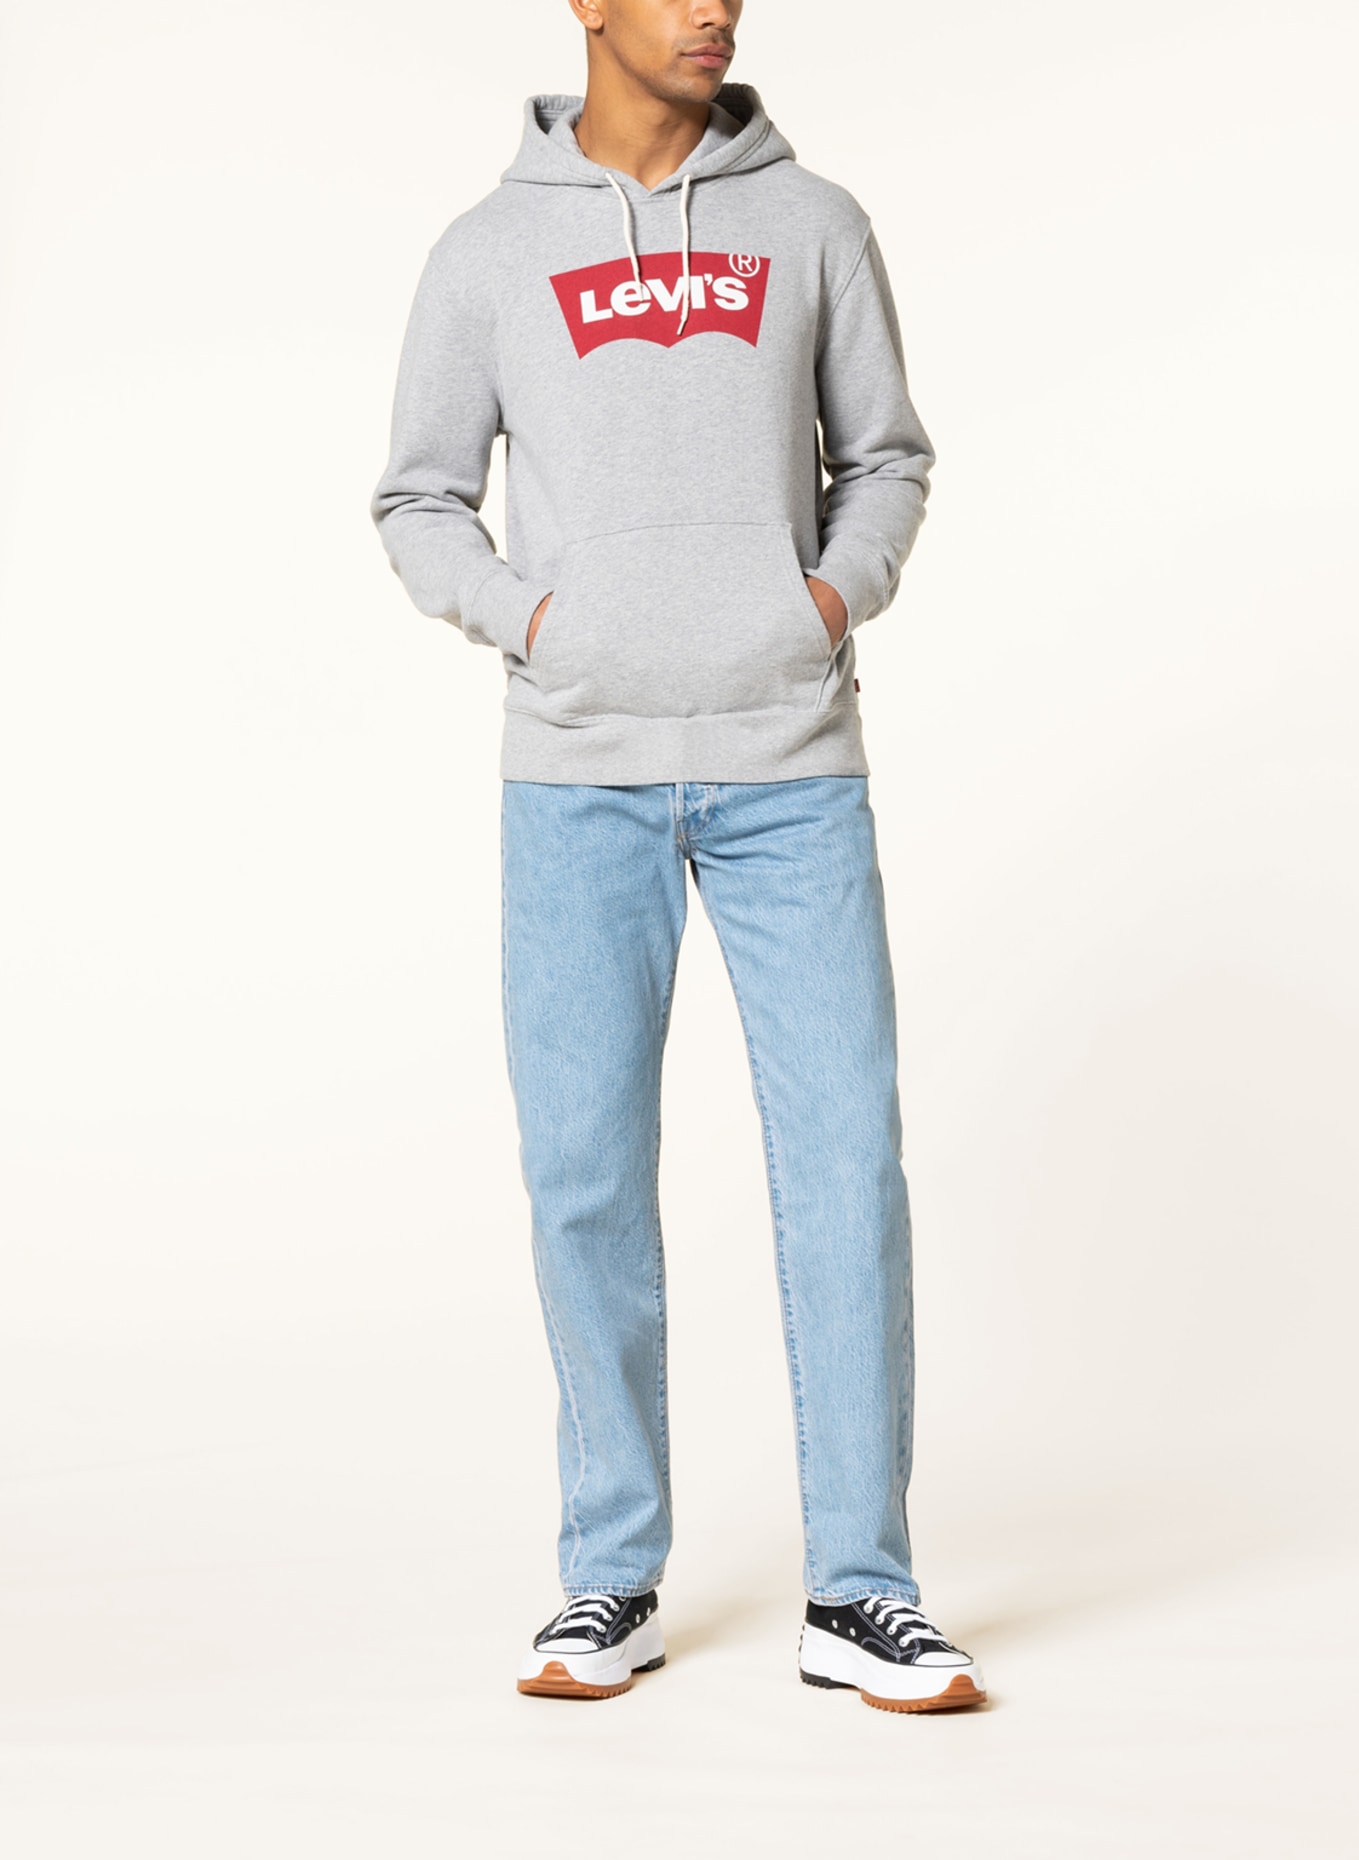 Levi's® Jeans 501 regular fit, Color: 86 Med Indigo - Flat Finish (Image 2)